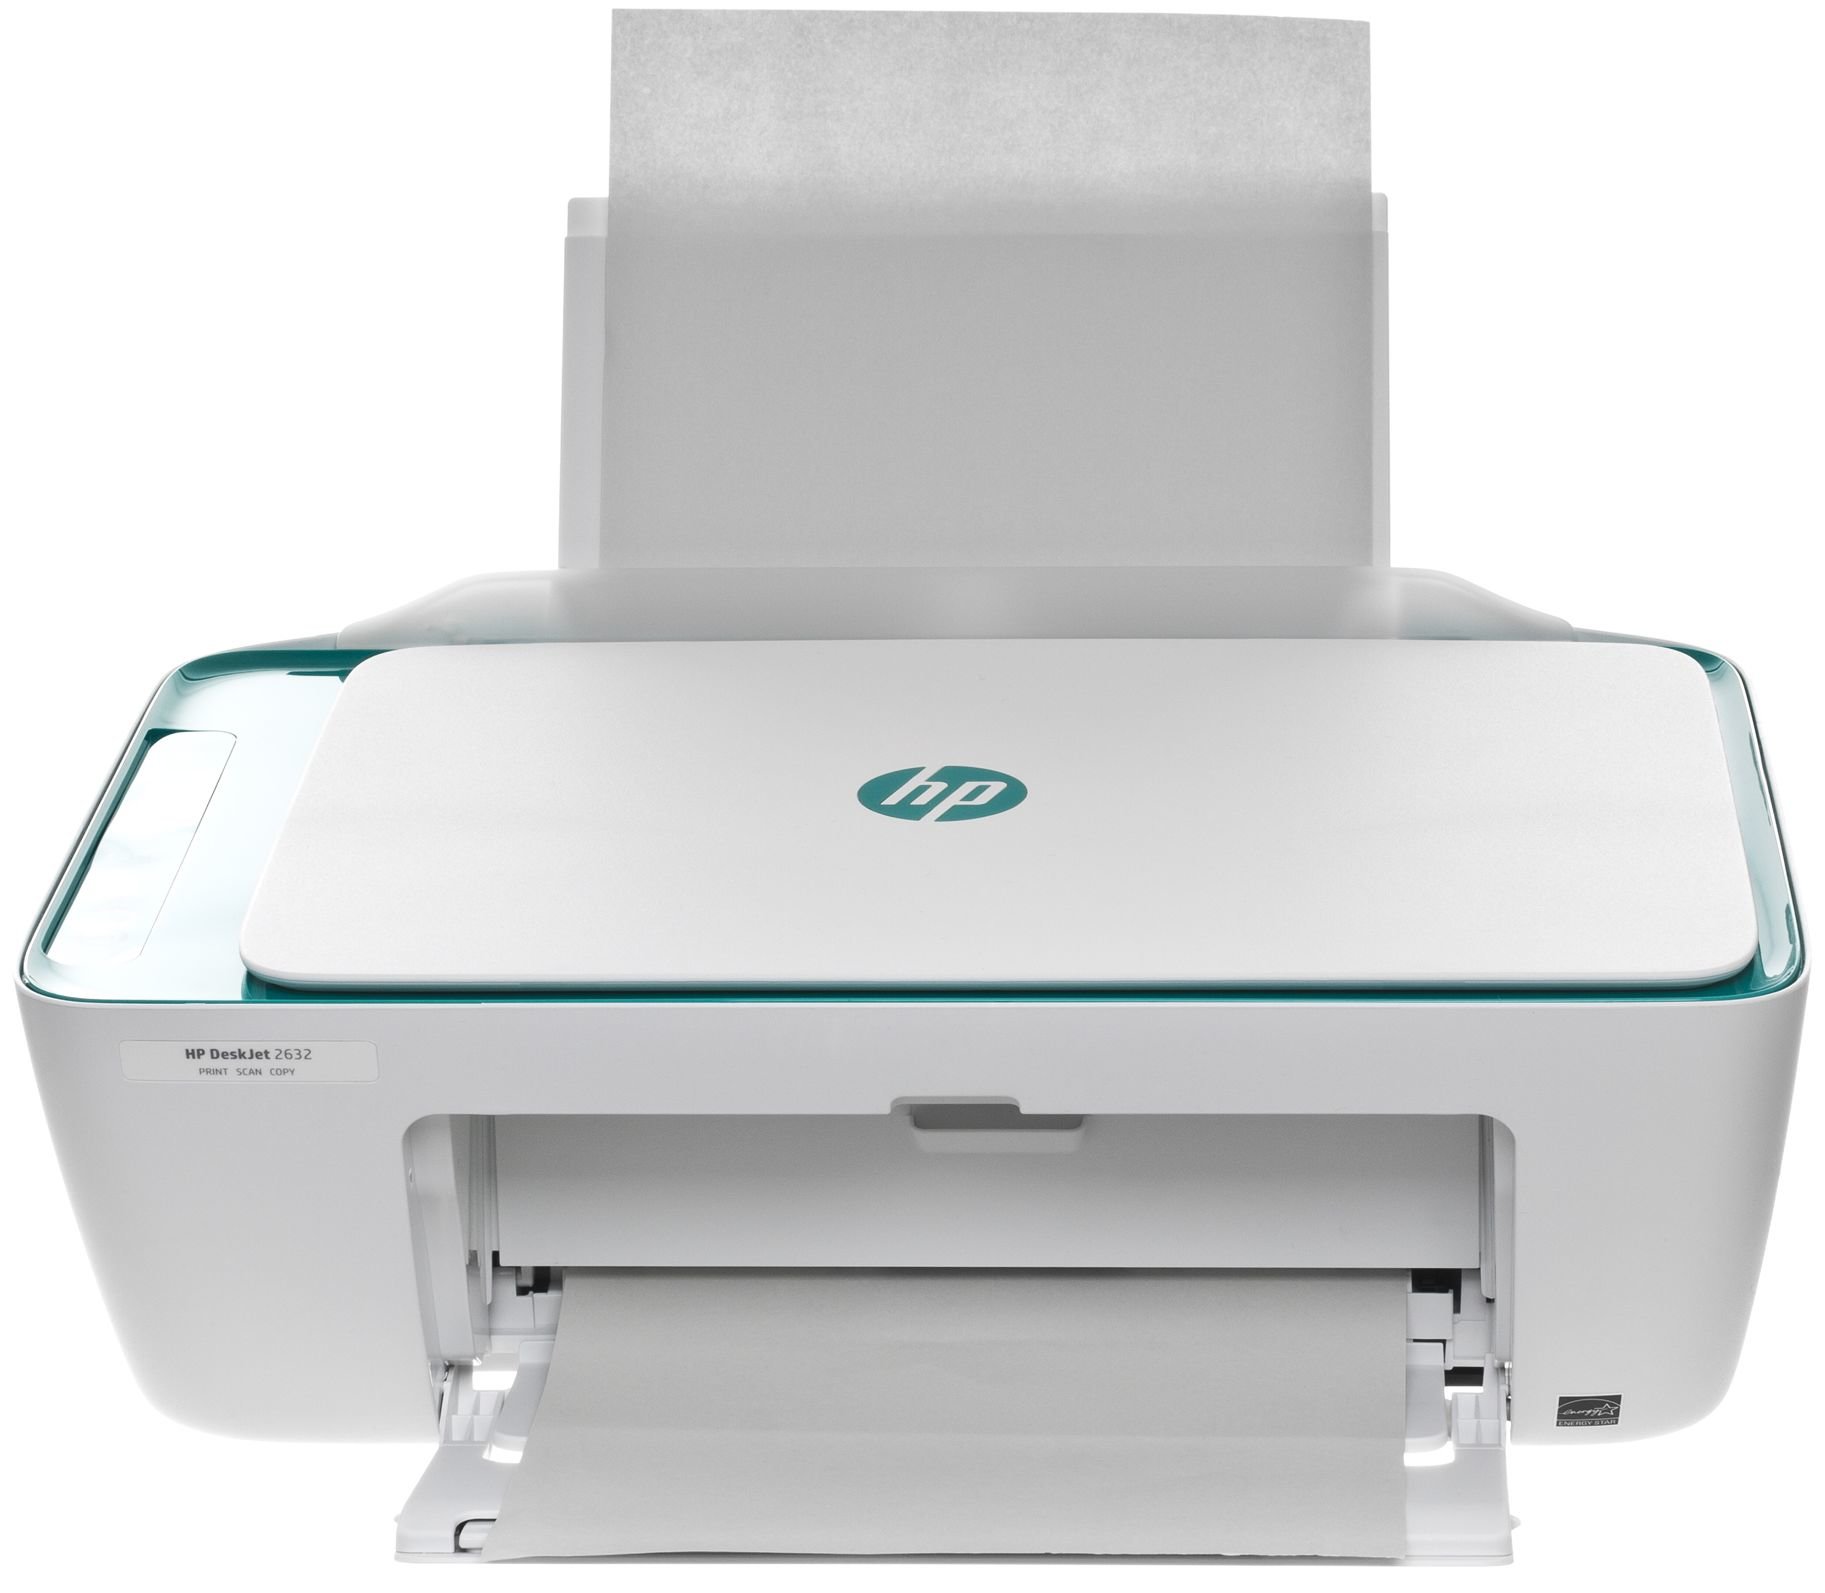 Hp deskjet 2632 | HP Deskjet 2632 printer review